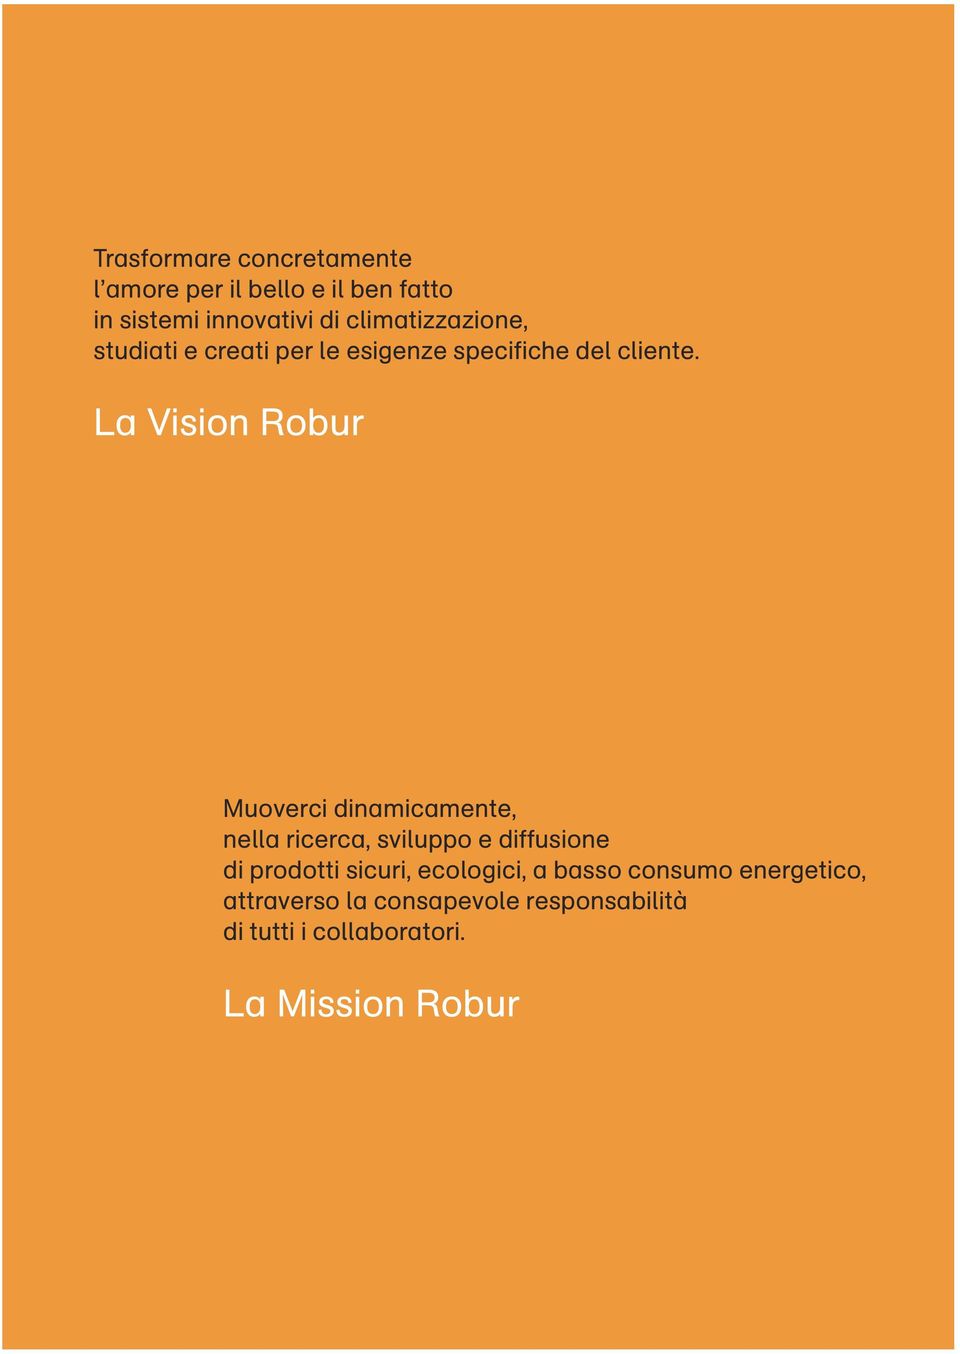 La Vision Robur Muoverci dinamicamente, nella ricerca, sviluppo e diffusione di prodotti